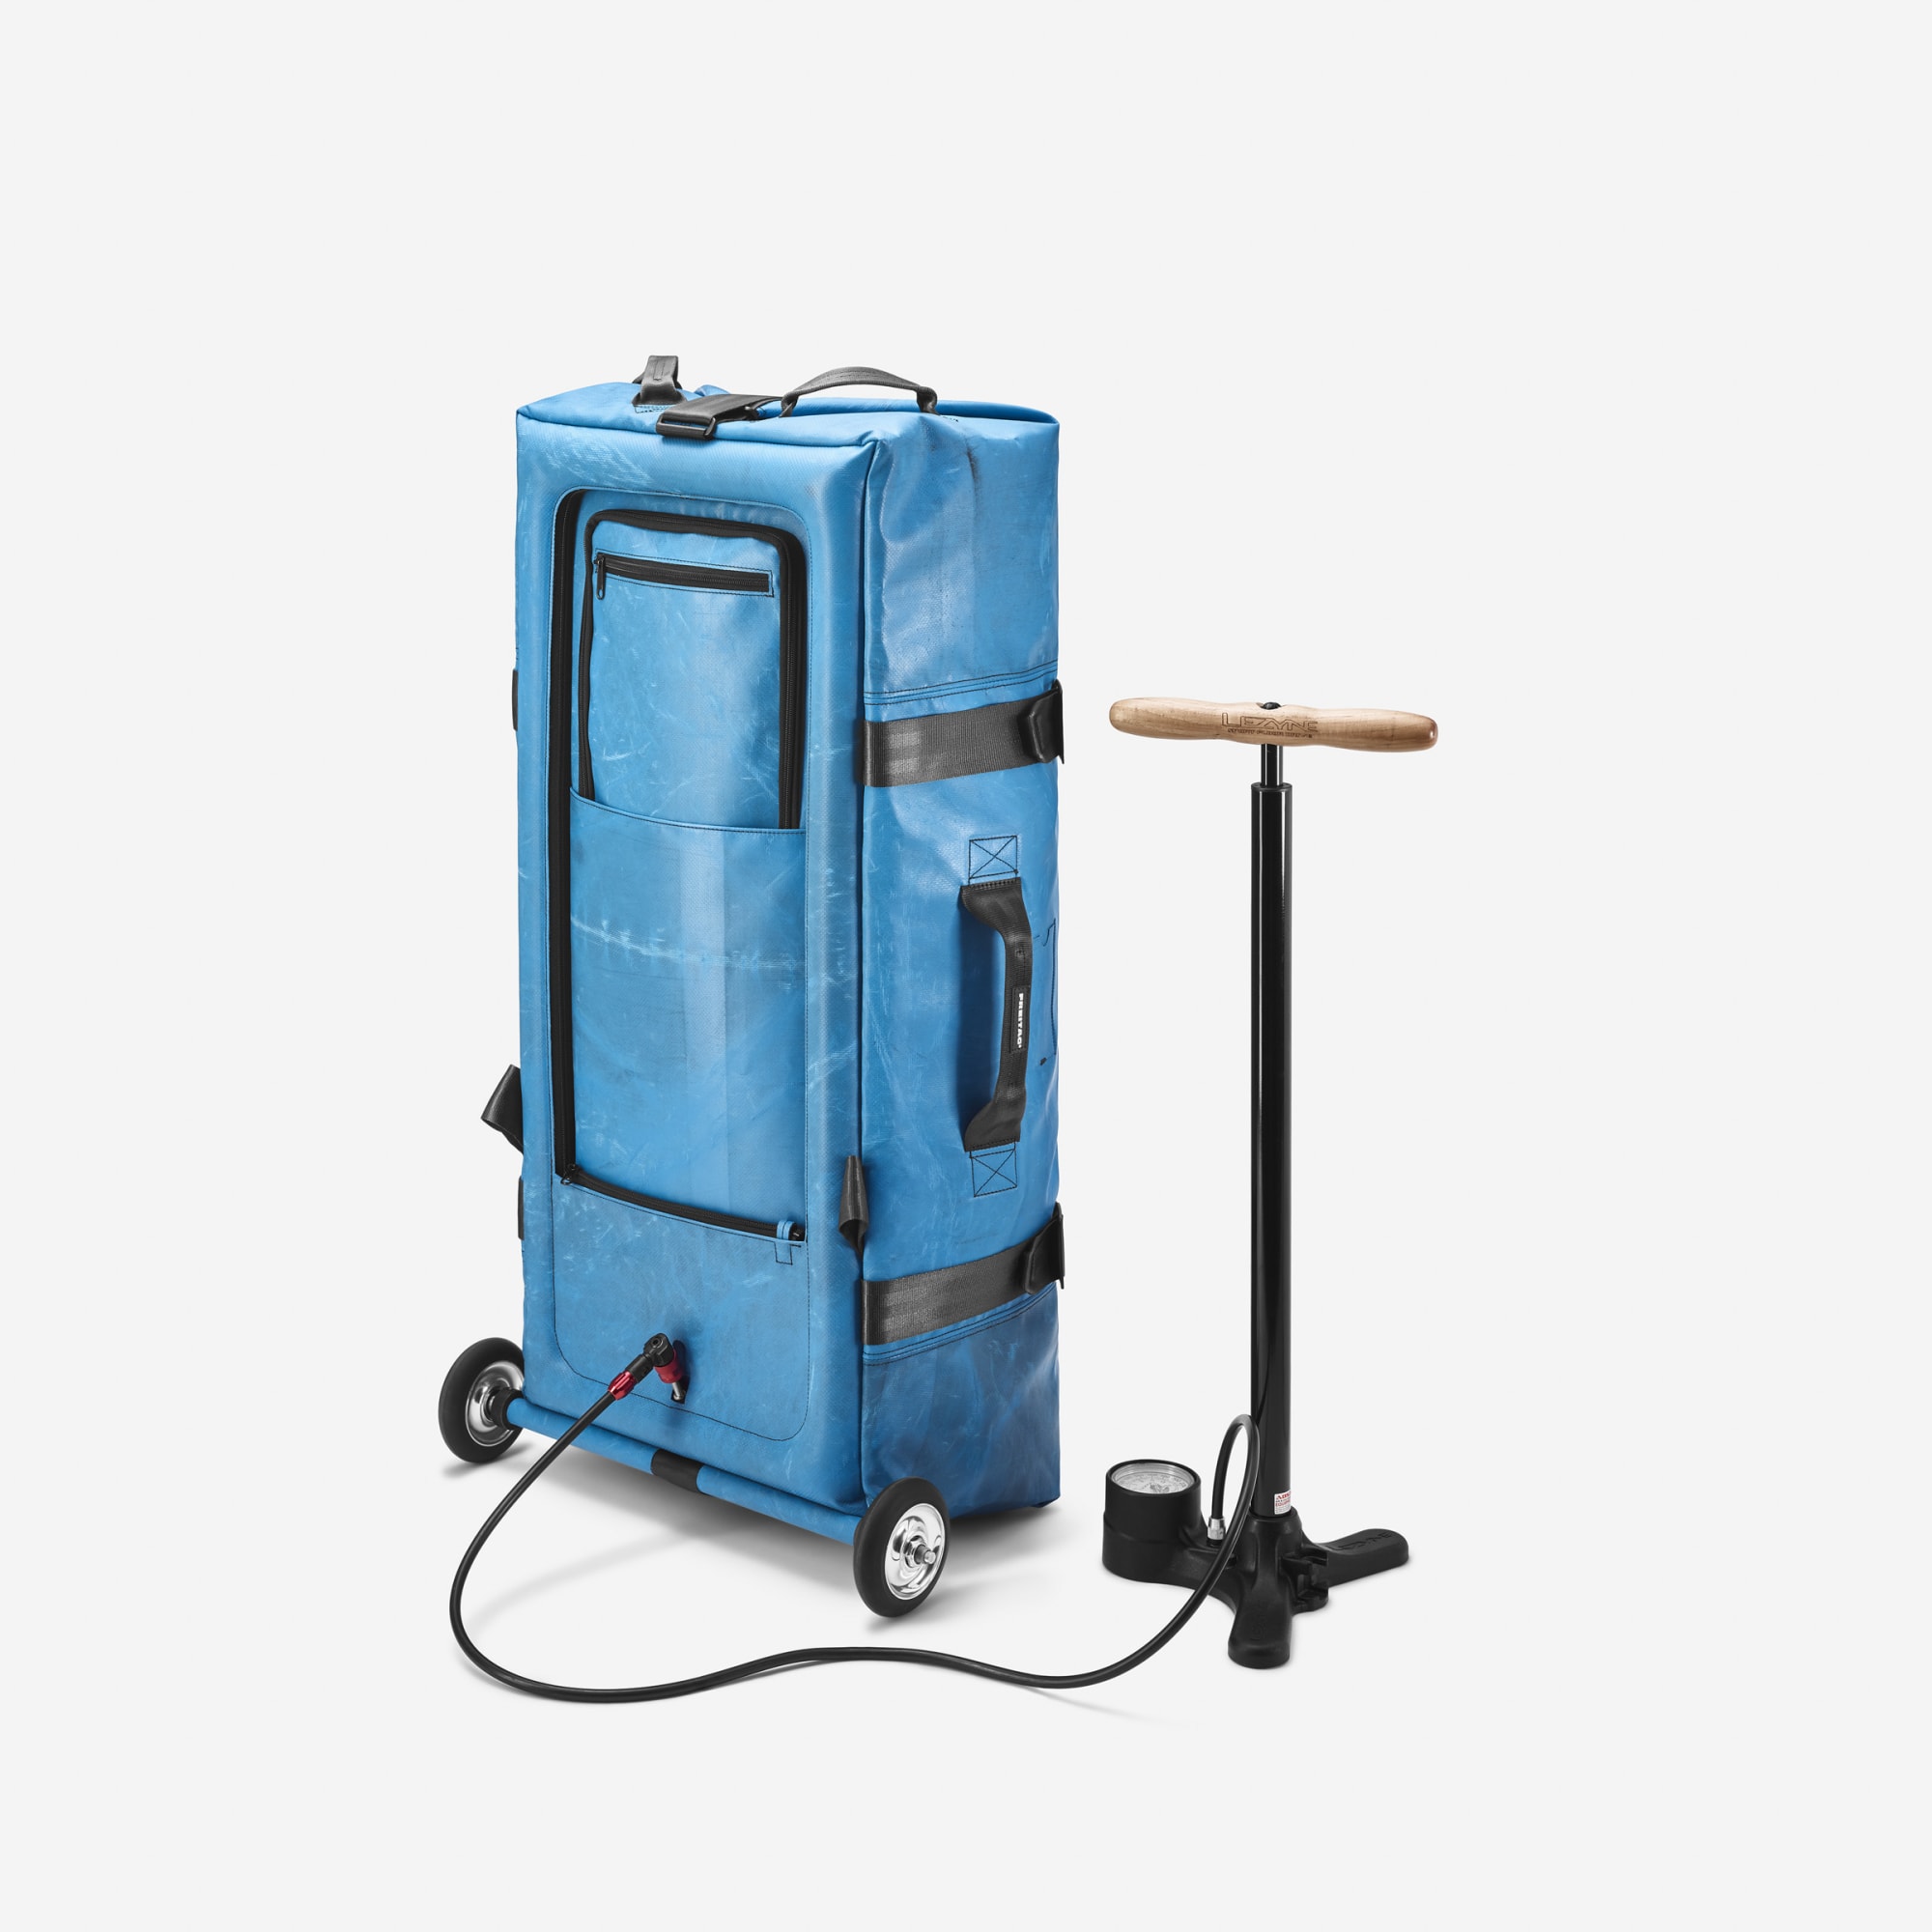 フライターグ、折り畳み可能な空気注入式スーツケース「F733 ZIPPELIN 